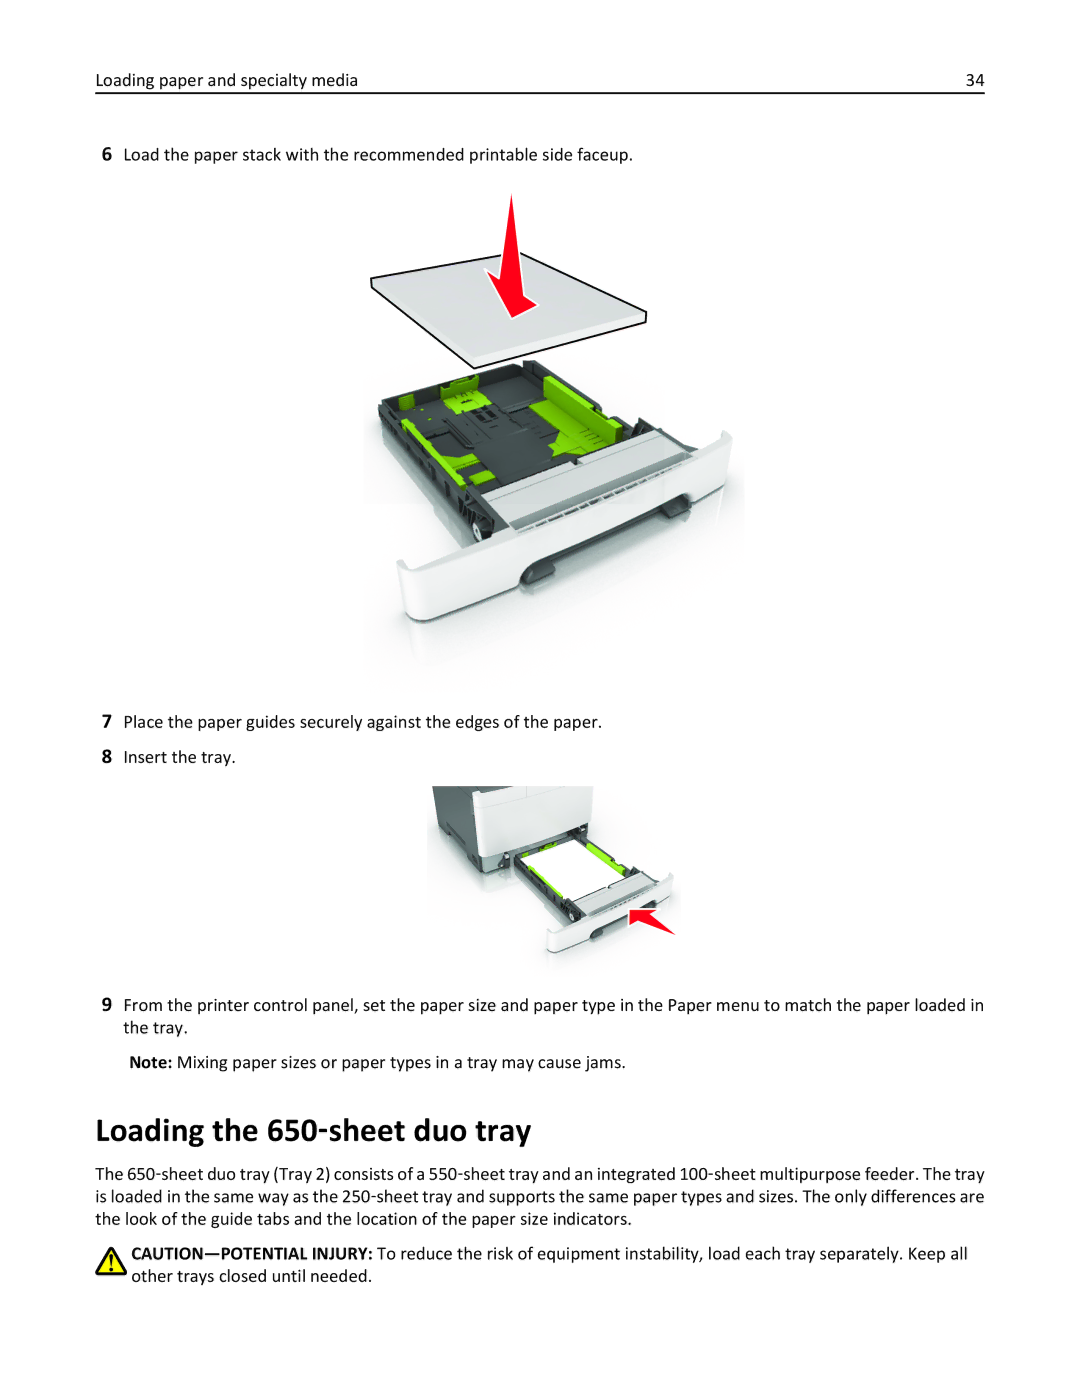 Lexmark CS410 manual Loading the 650‑sheet duo tray 